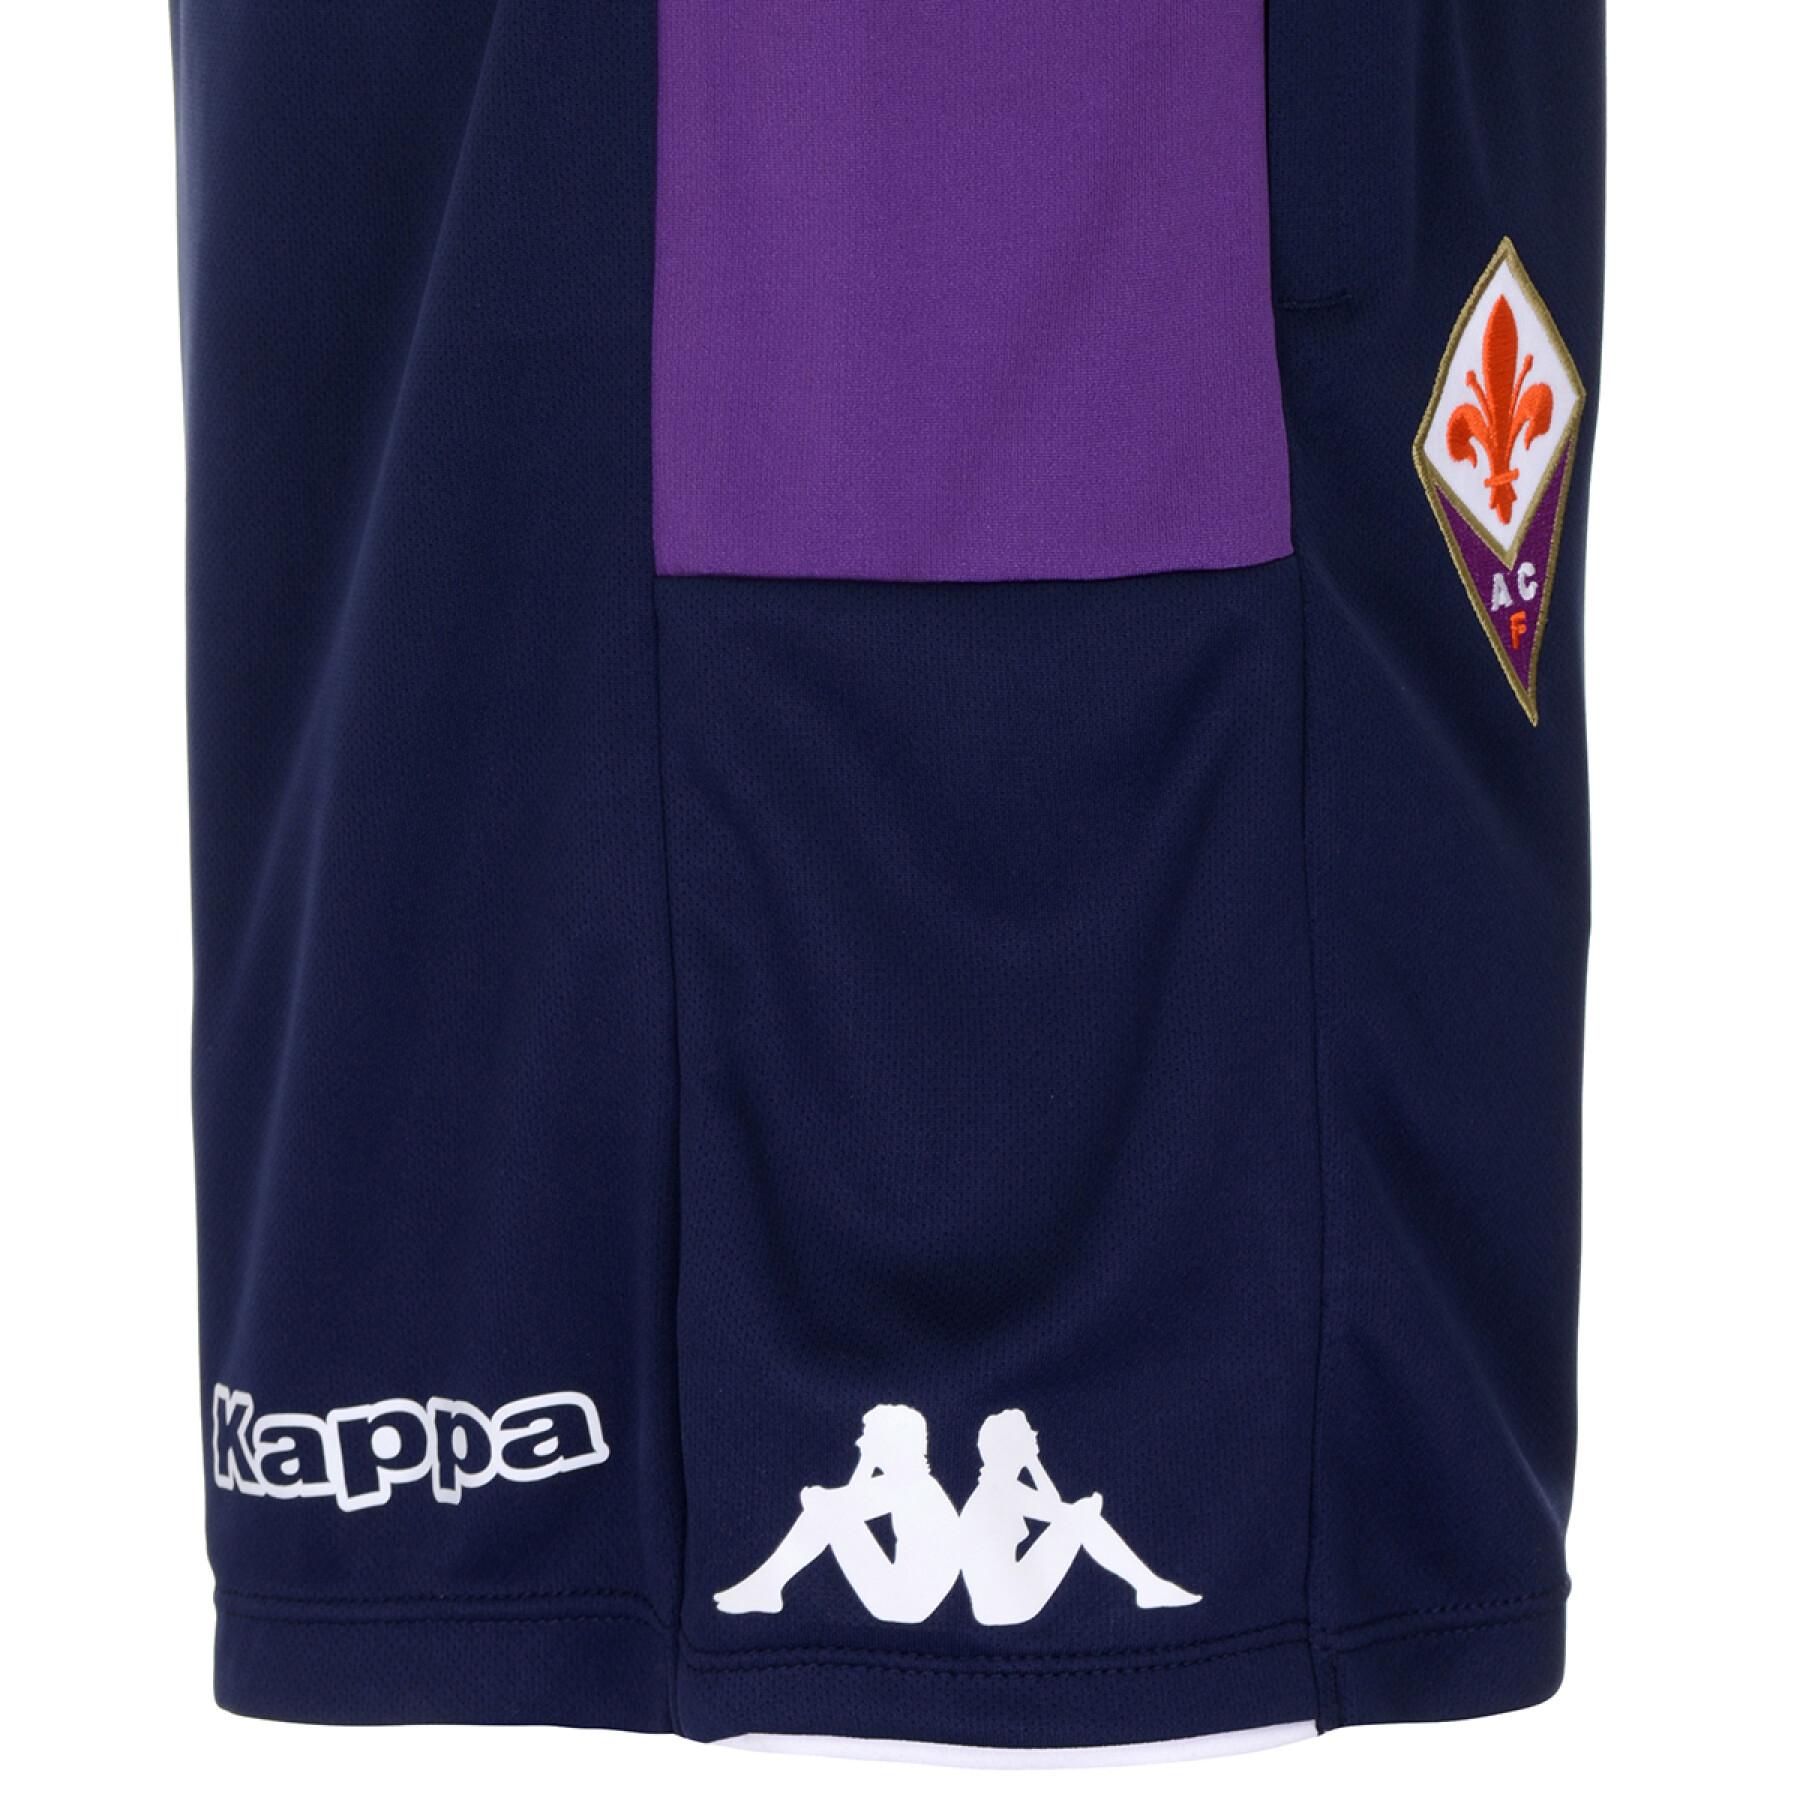 Kurz Fiorentina AC 2021/22 ahorazip pro 5